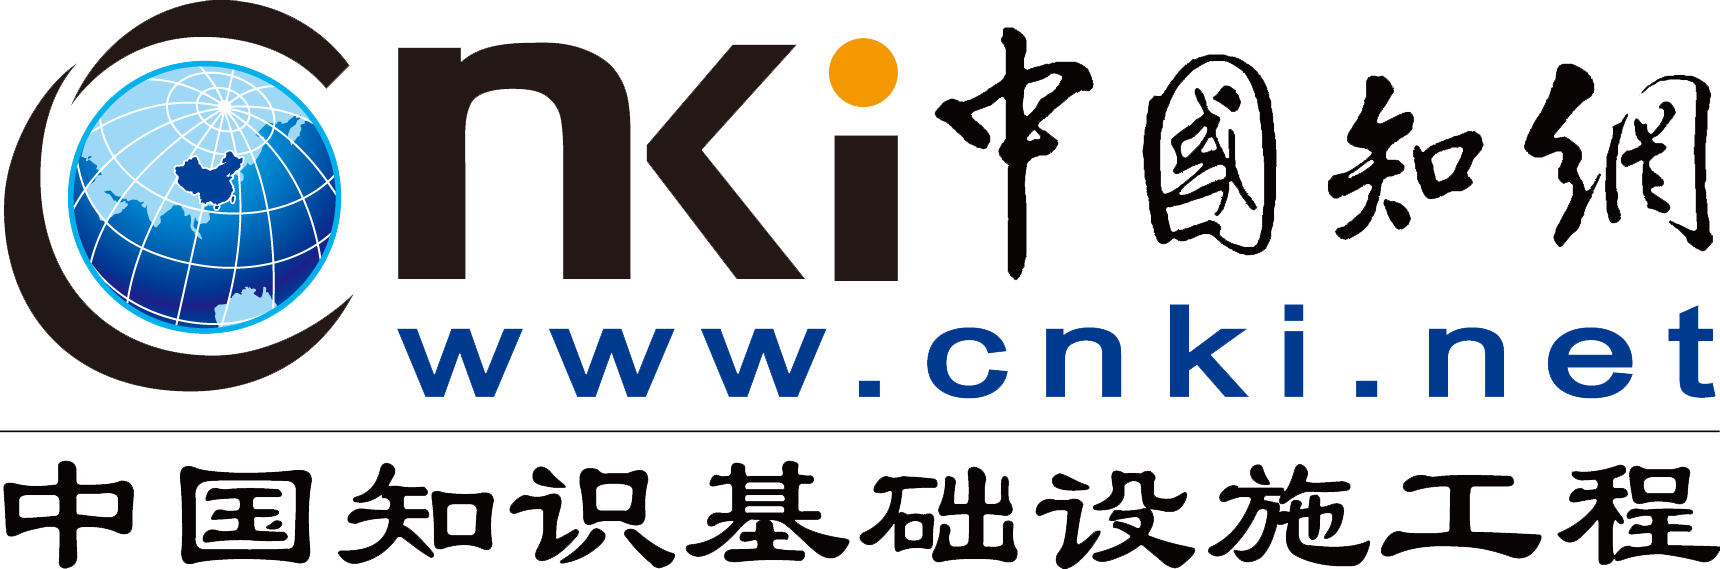 cnki logo